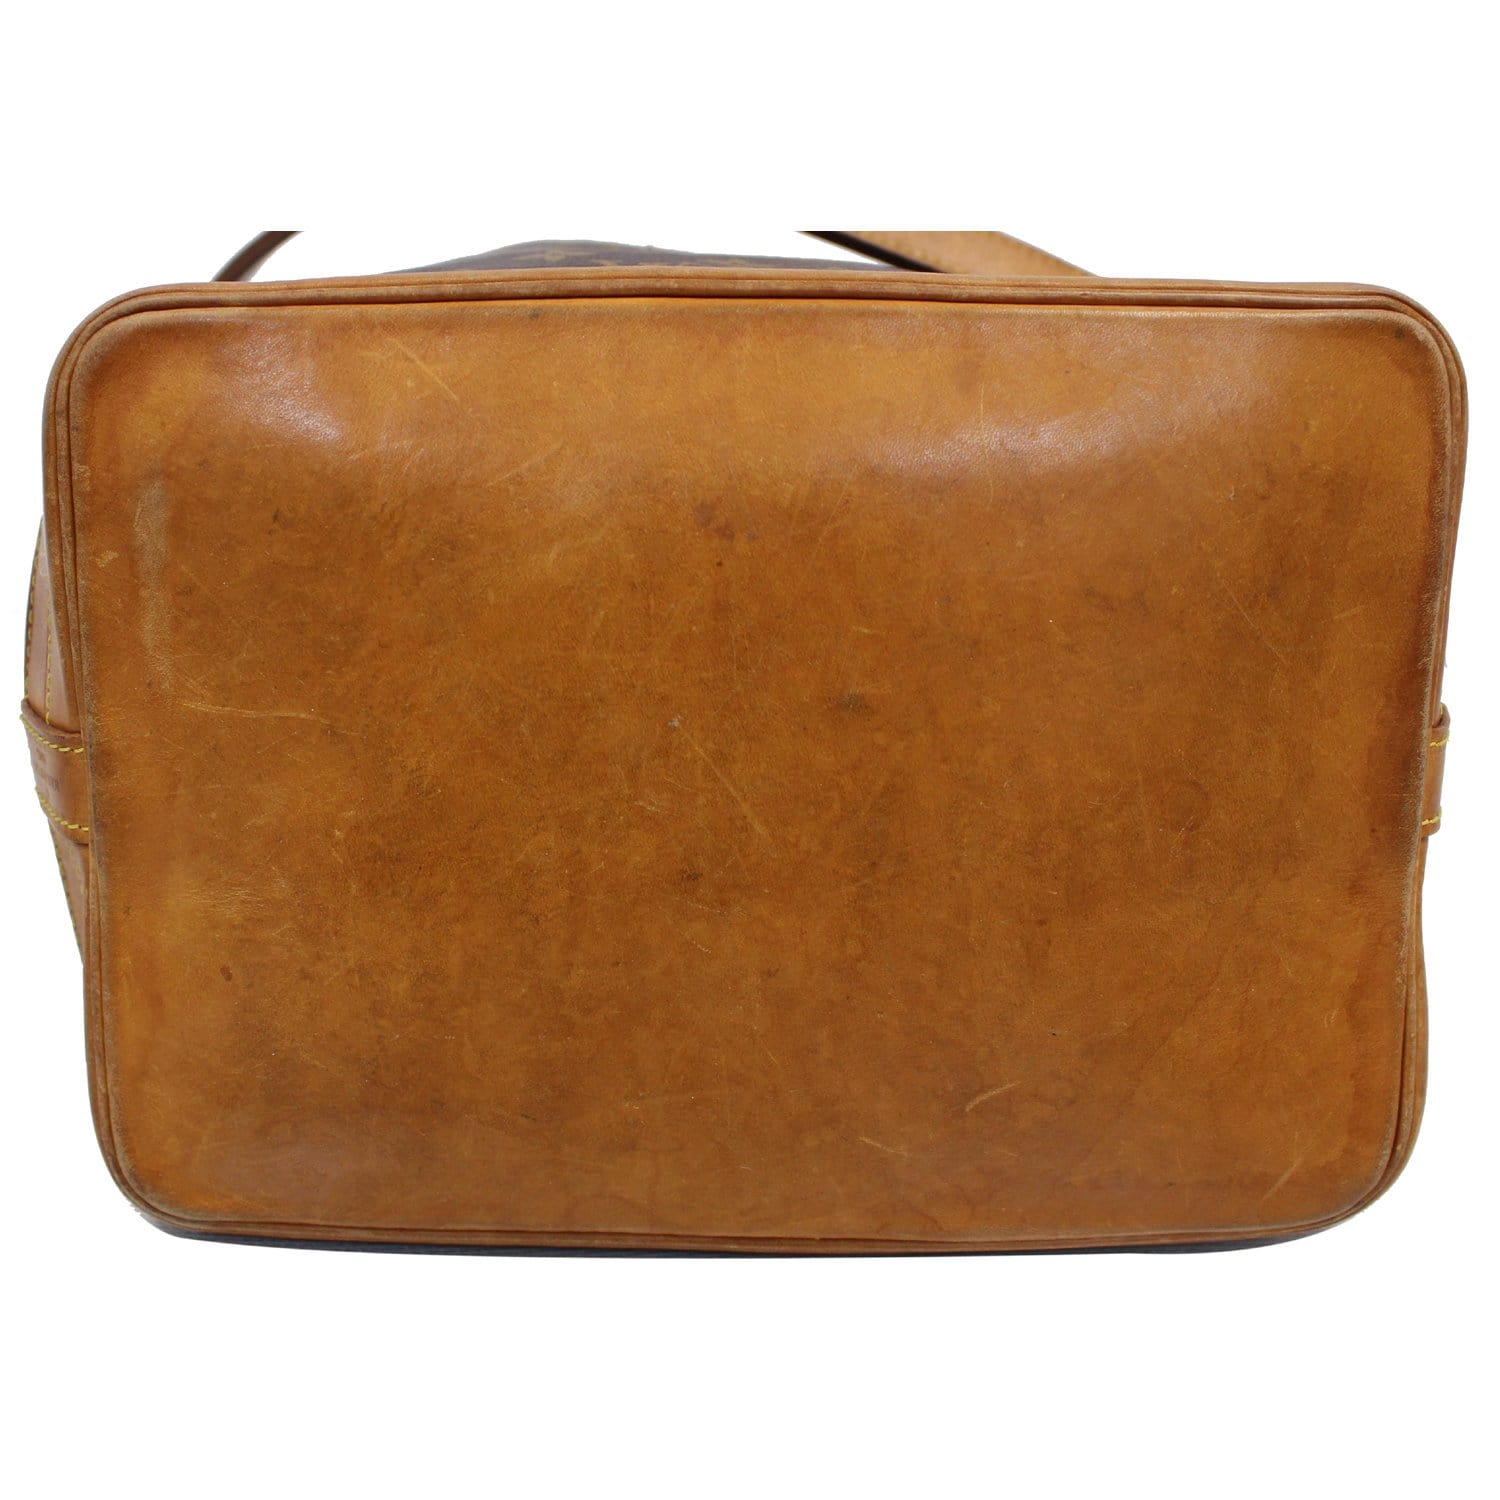 Nano noé cloth handbag Louis Vuitton Brown in Cloth - 25261581